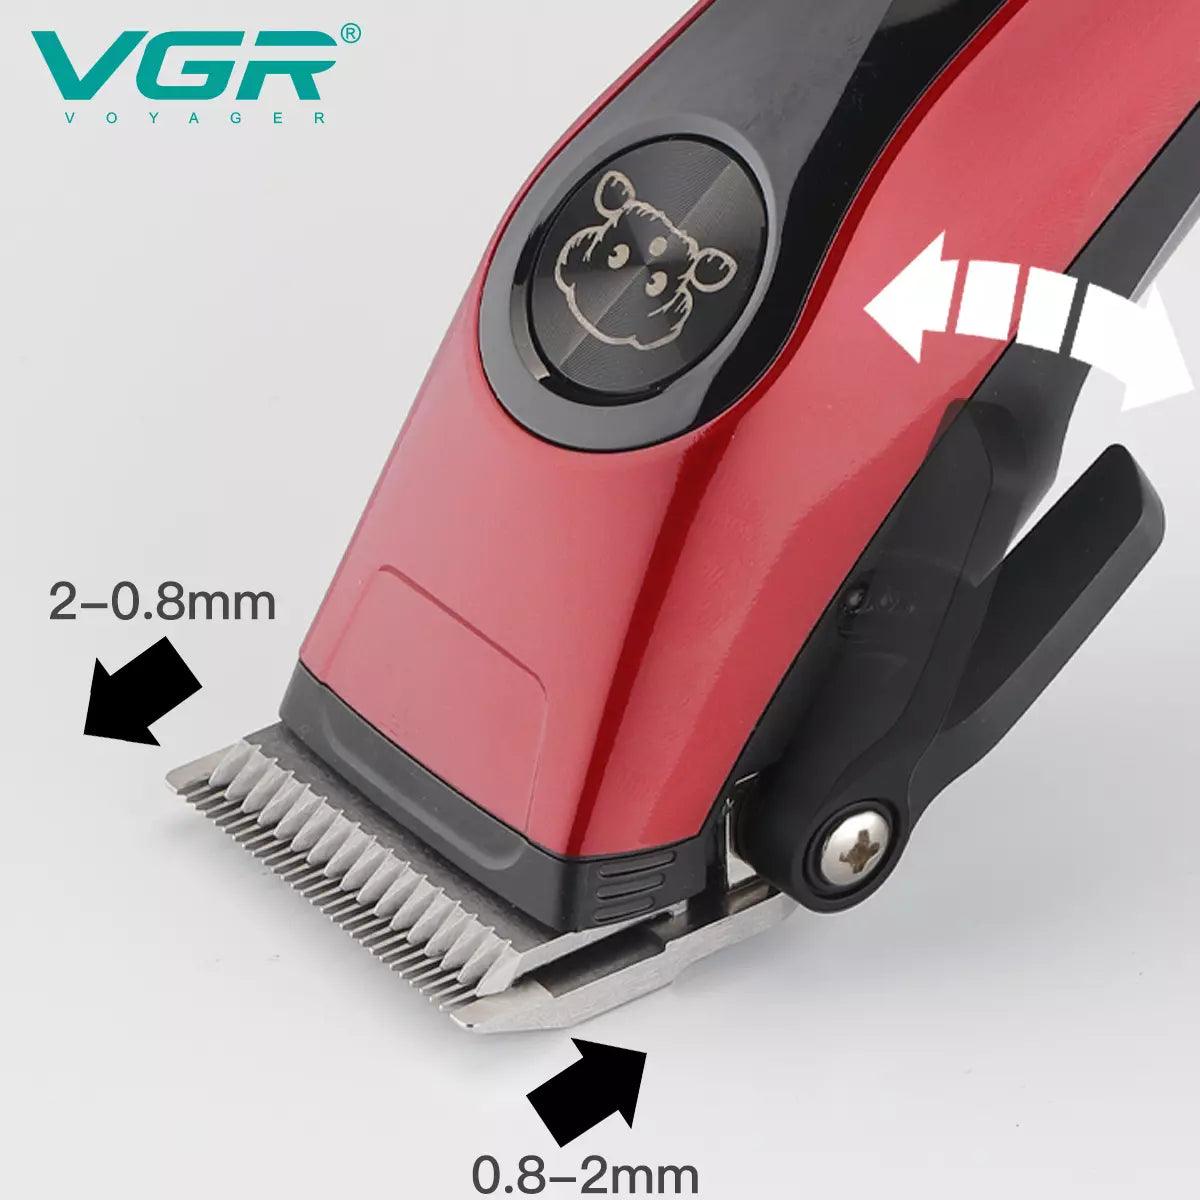 VGR V-202 Pet Animal Hair Clipper, Red